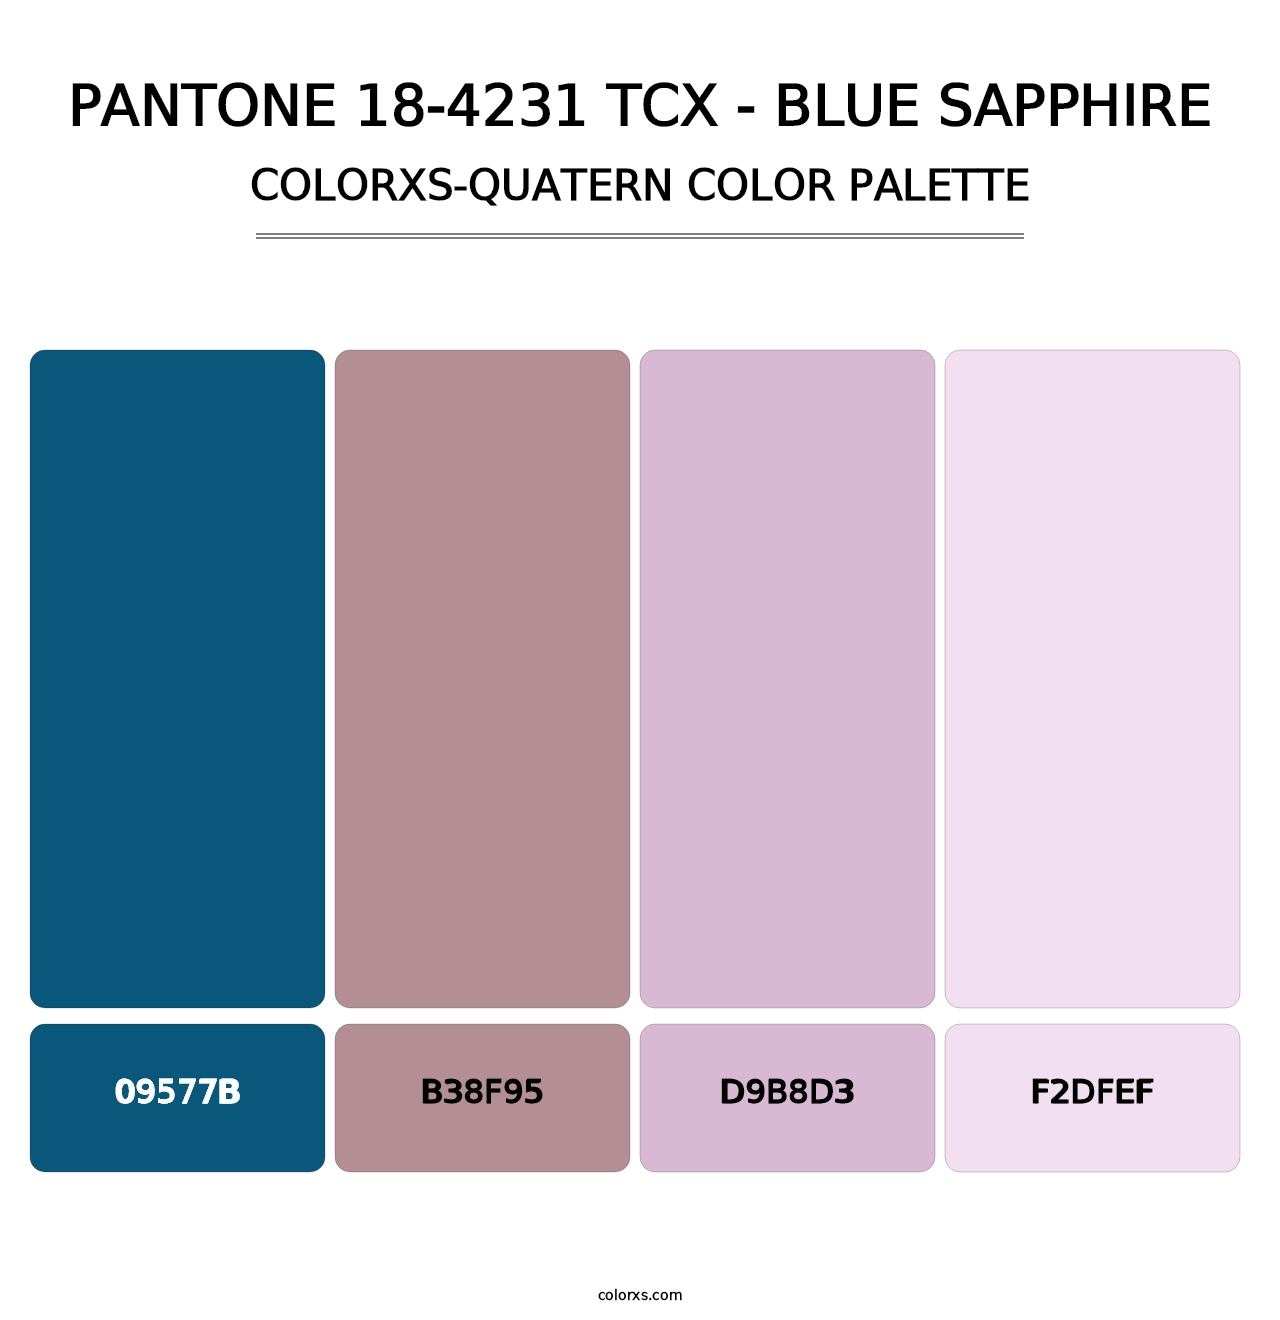 PANTONE 18-4231 TCX - Blue Sapphire - Colorxs Quatern Palette